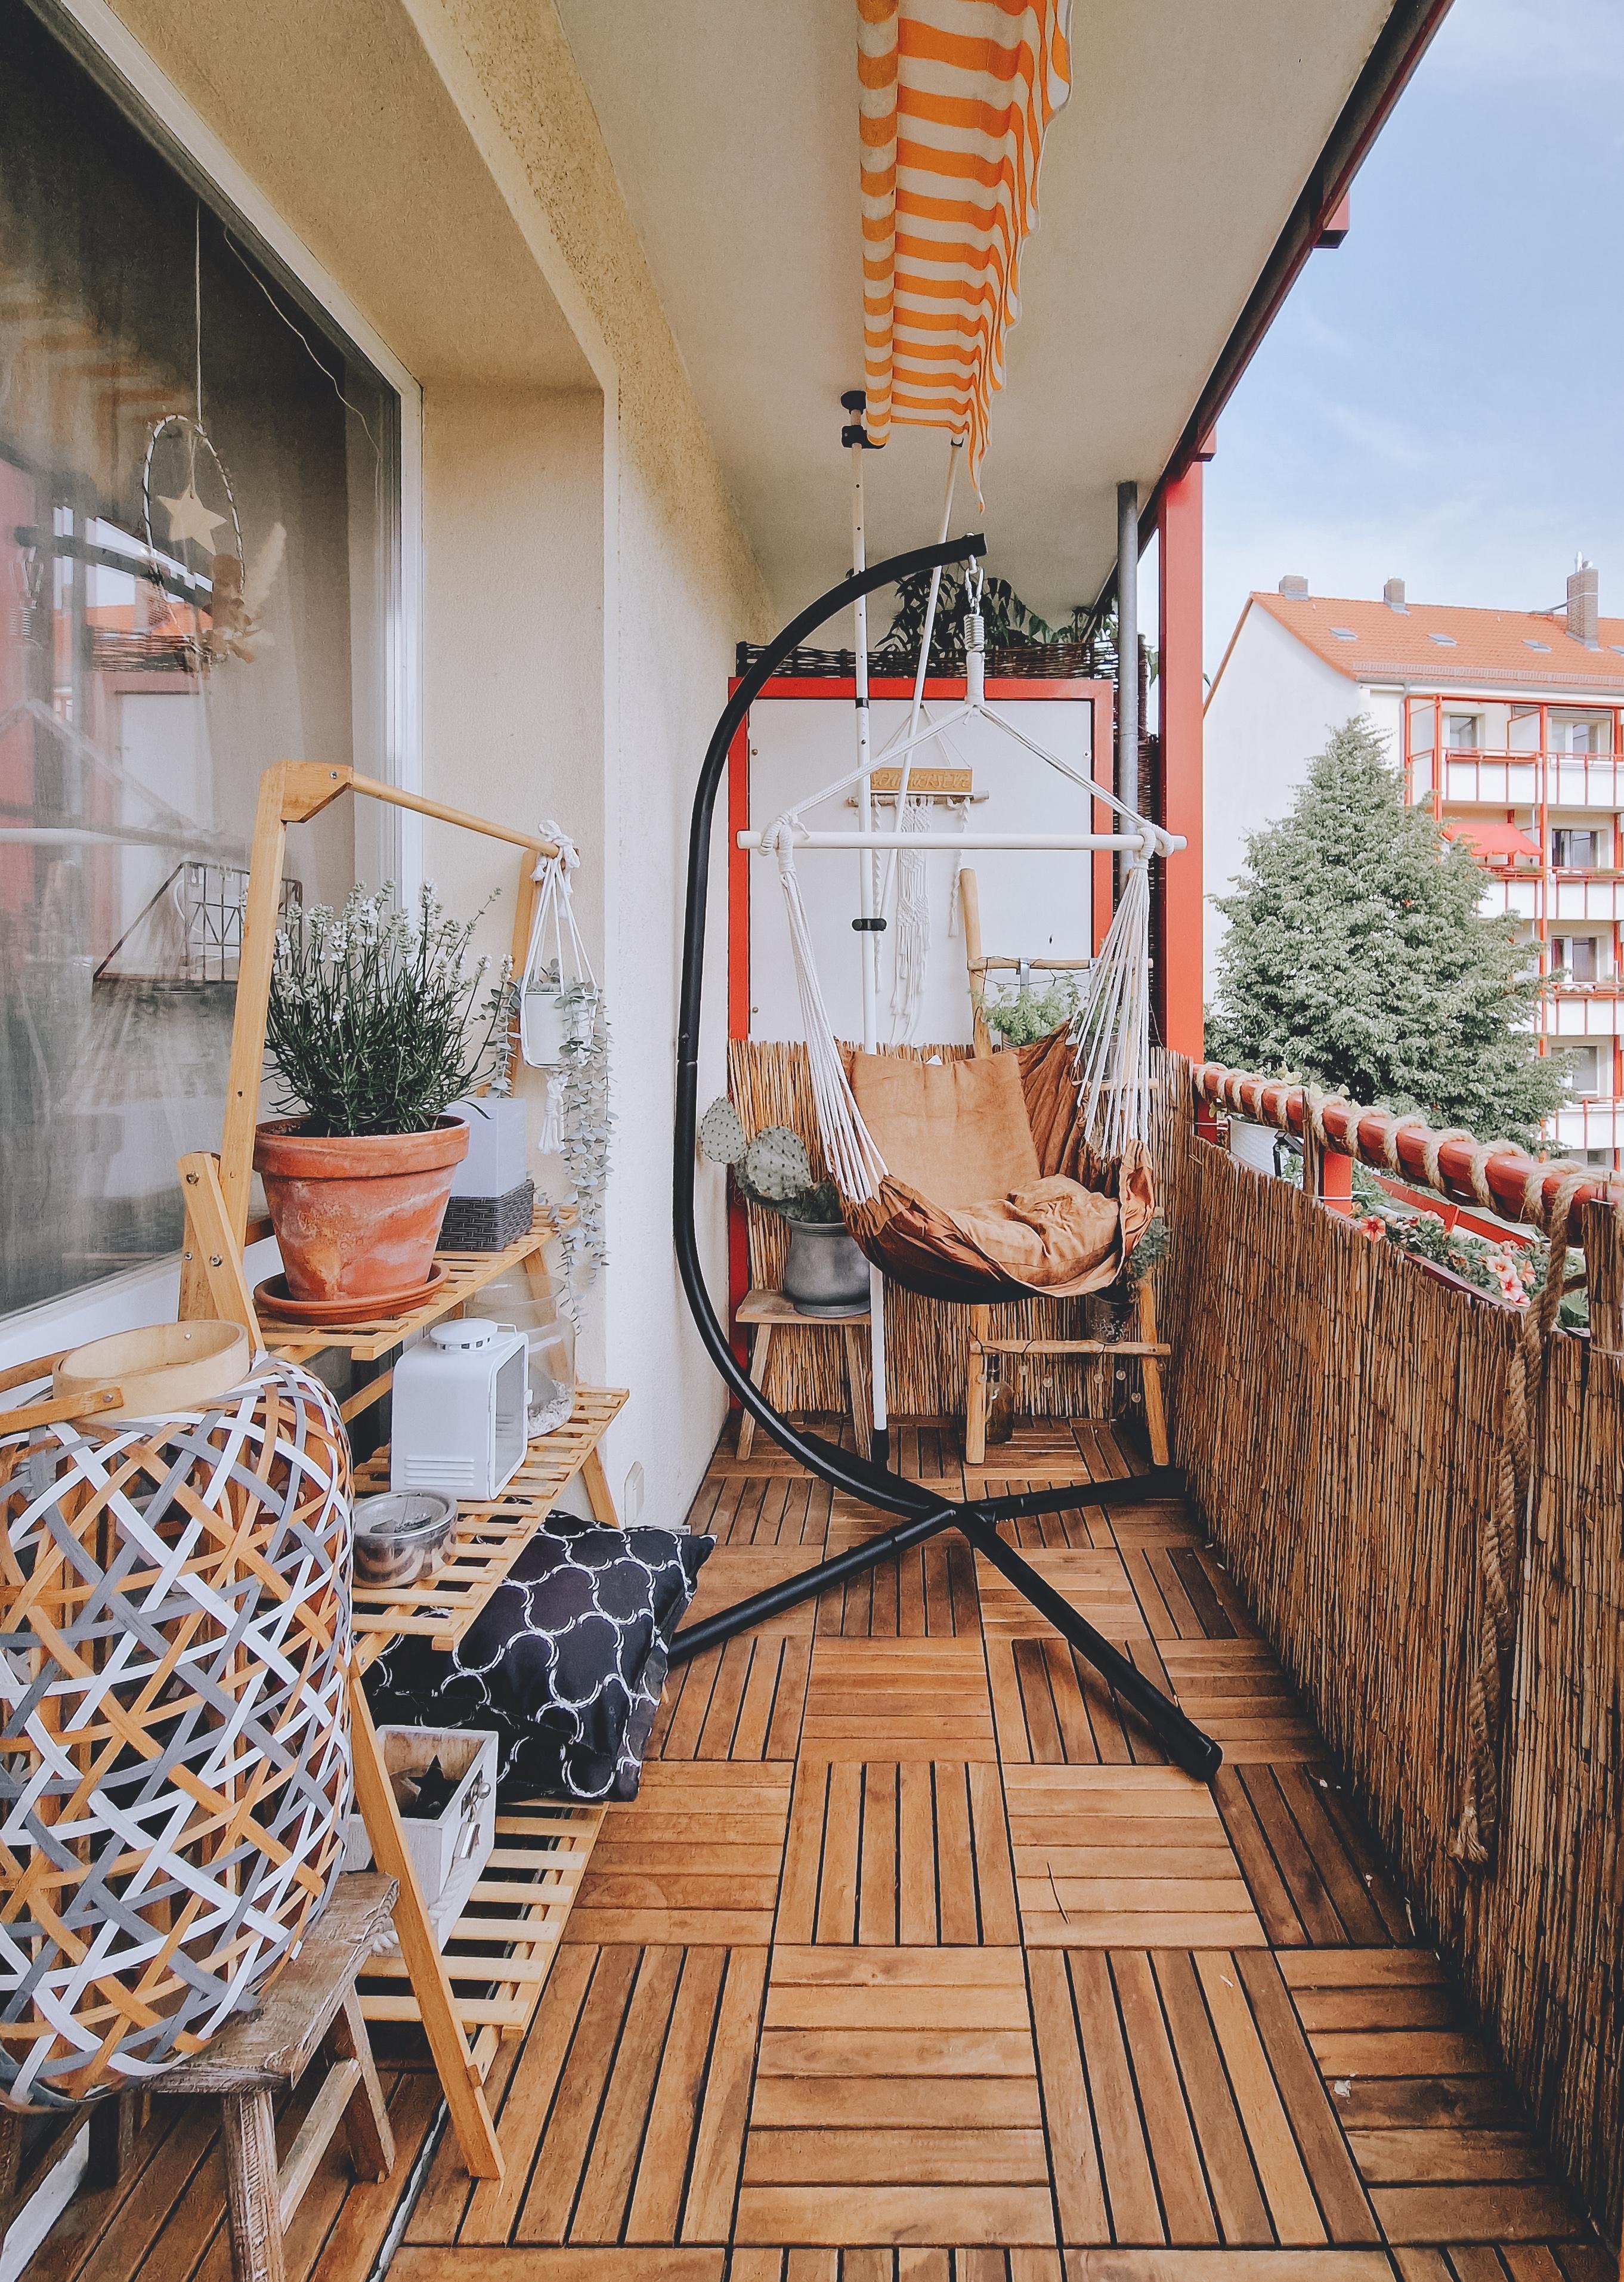 #Balkon #balkonliebe #sichtschutz #hingesetzt #Pflanzen #pflanzregal #boholiebe #bohostyle